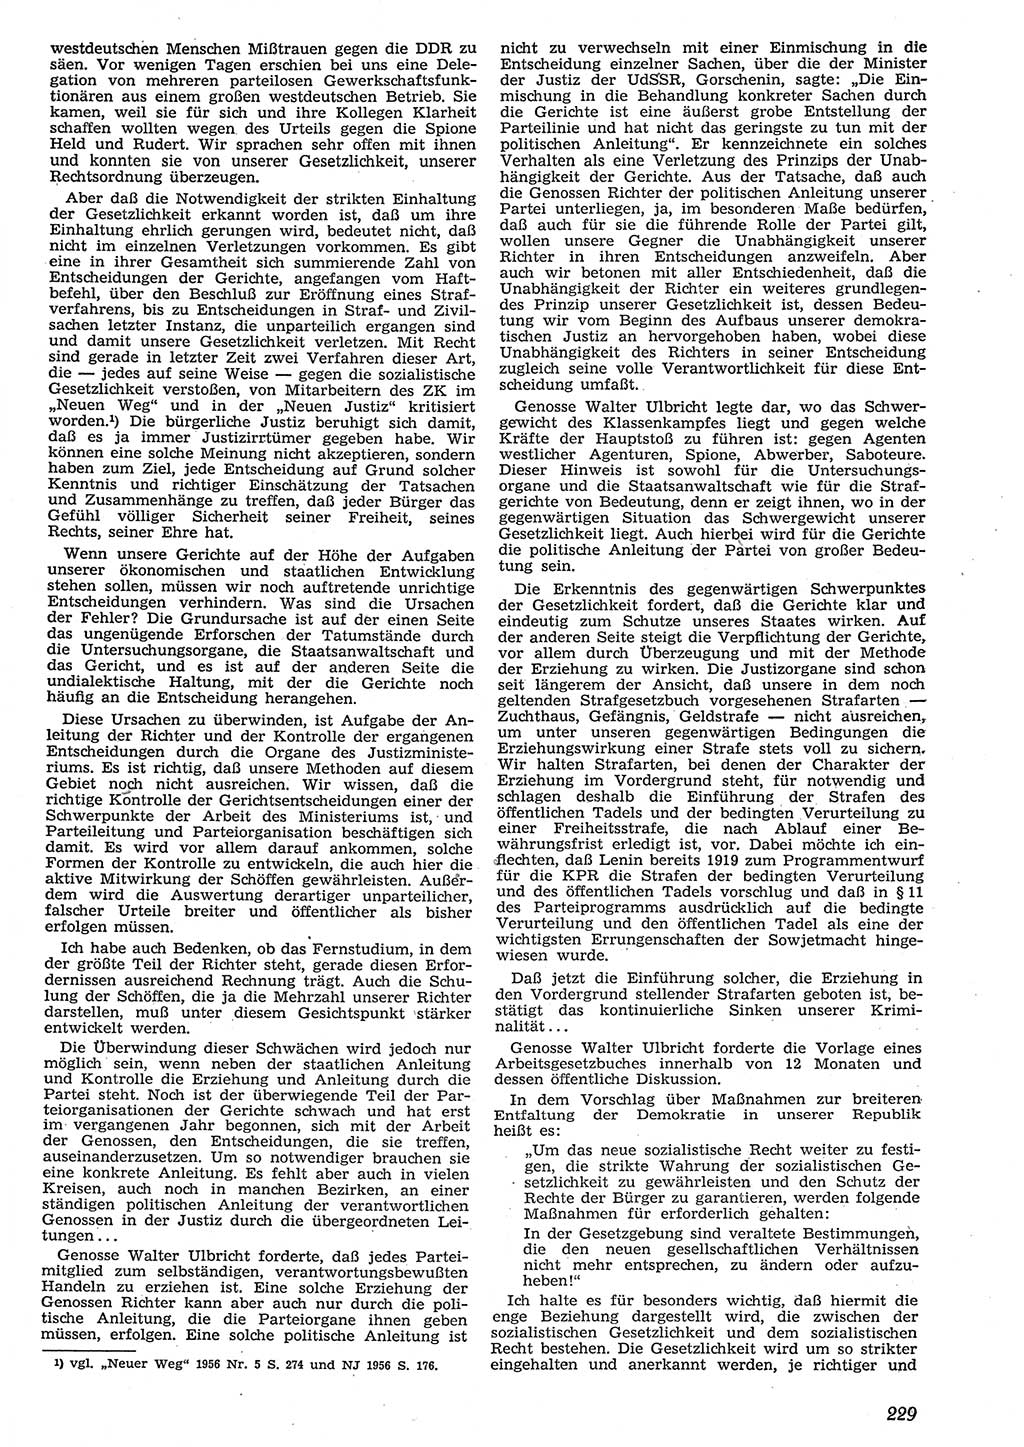 Neue Justiz (NJ), Zeitschrift für Recht und Rechtswissenschaft [Deutsche Demokratische Republik (DDR)], 10. Jahrgang 1956, Seite 229 (NJ DDR 1956, S. 229)